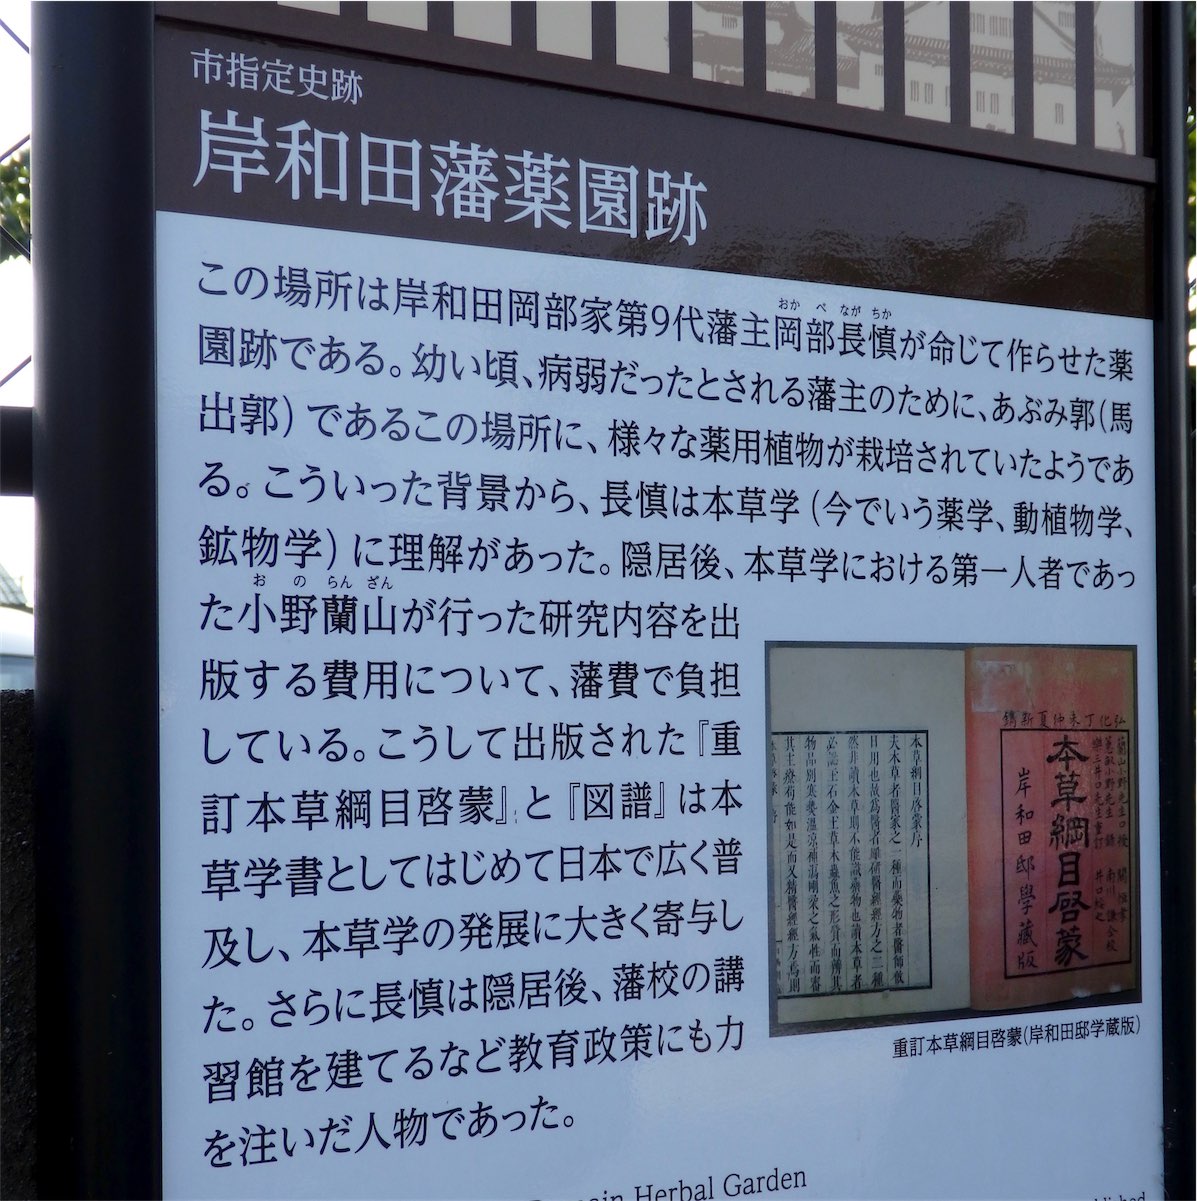 ㉗岸和田藩薬園跡説明板画像